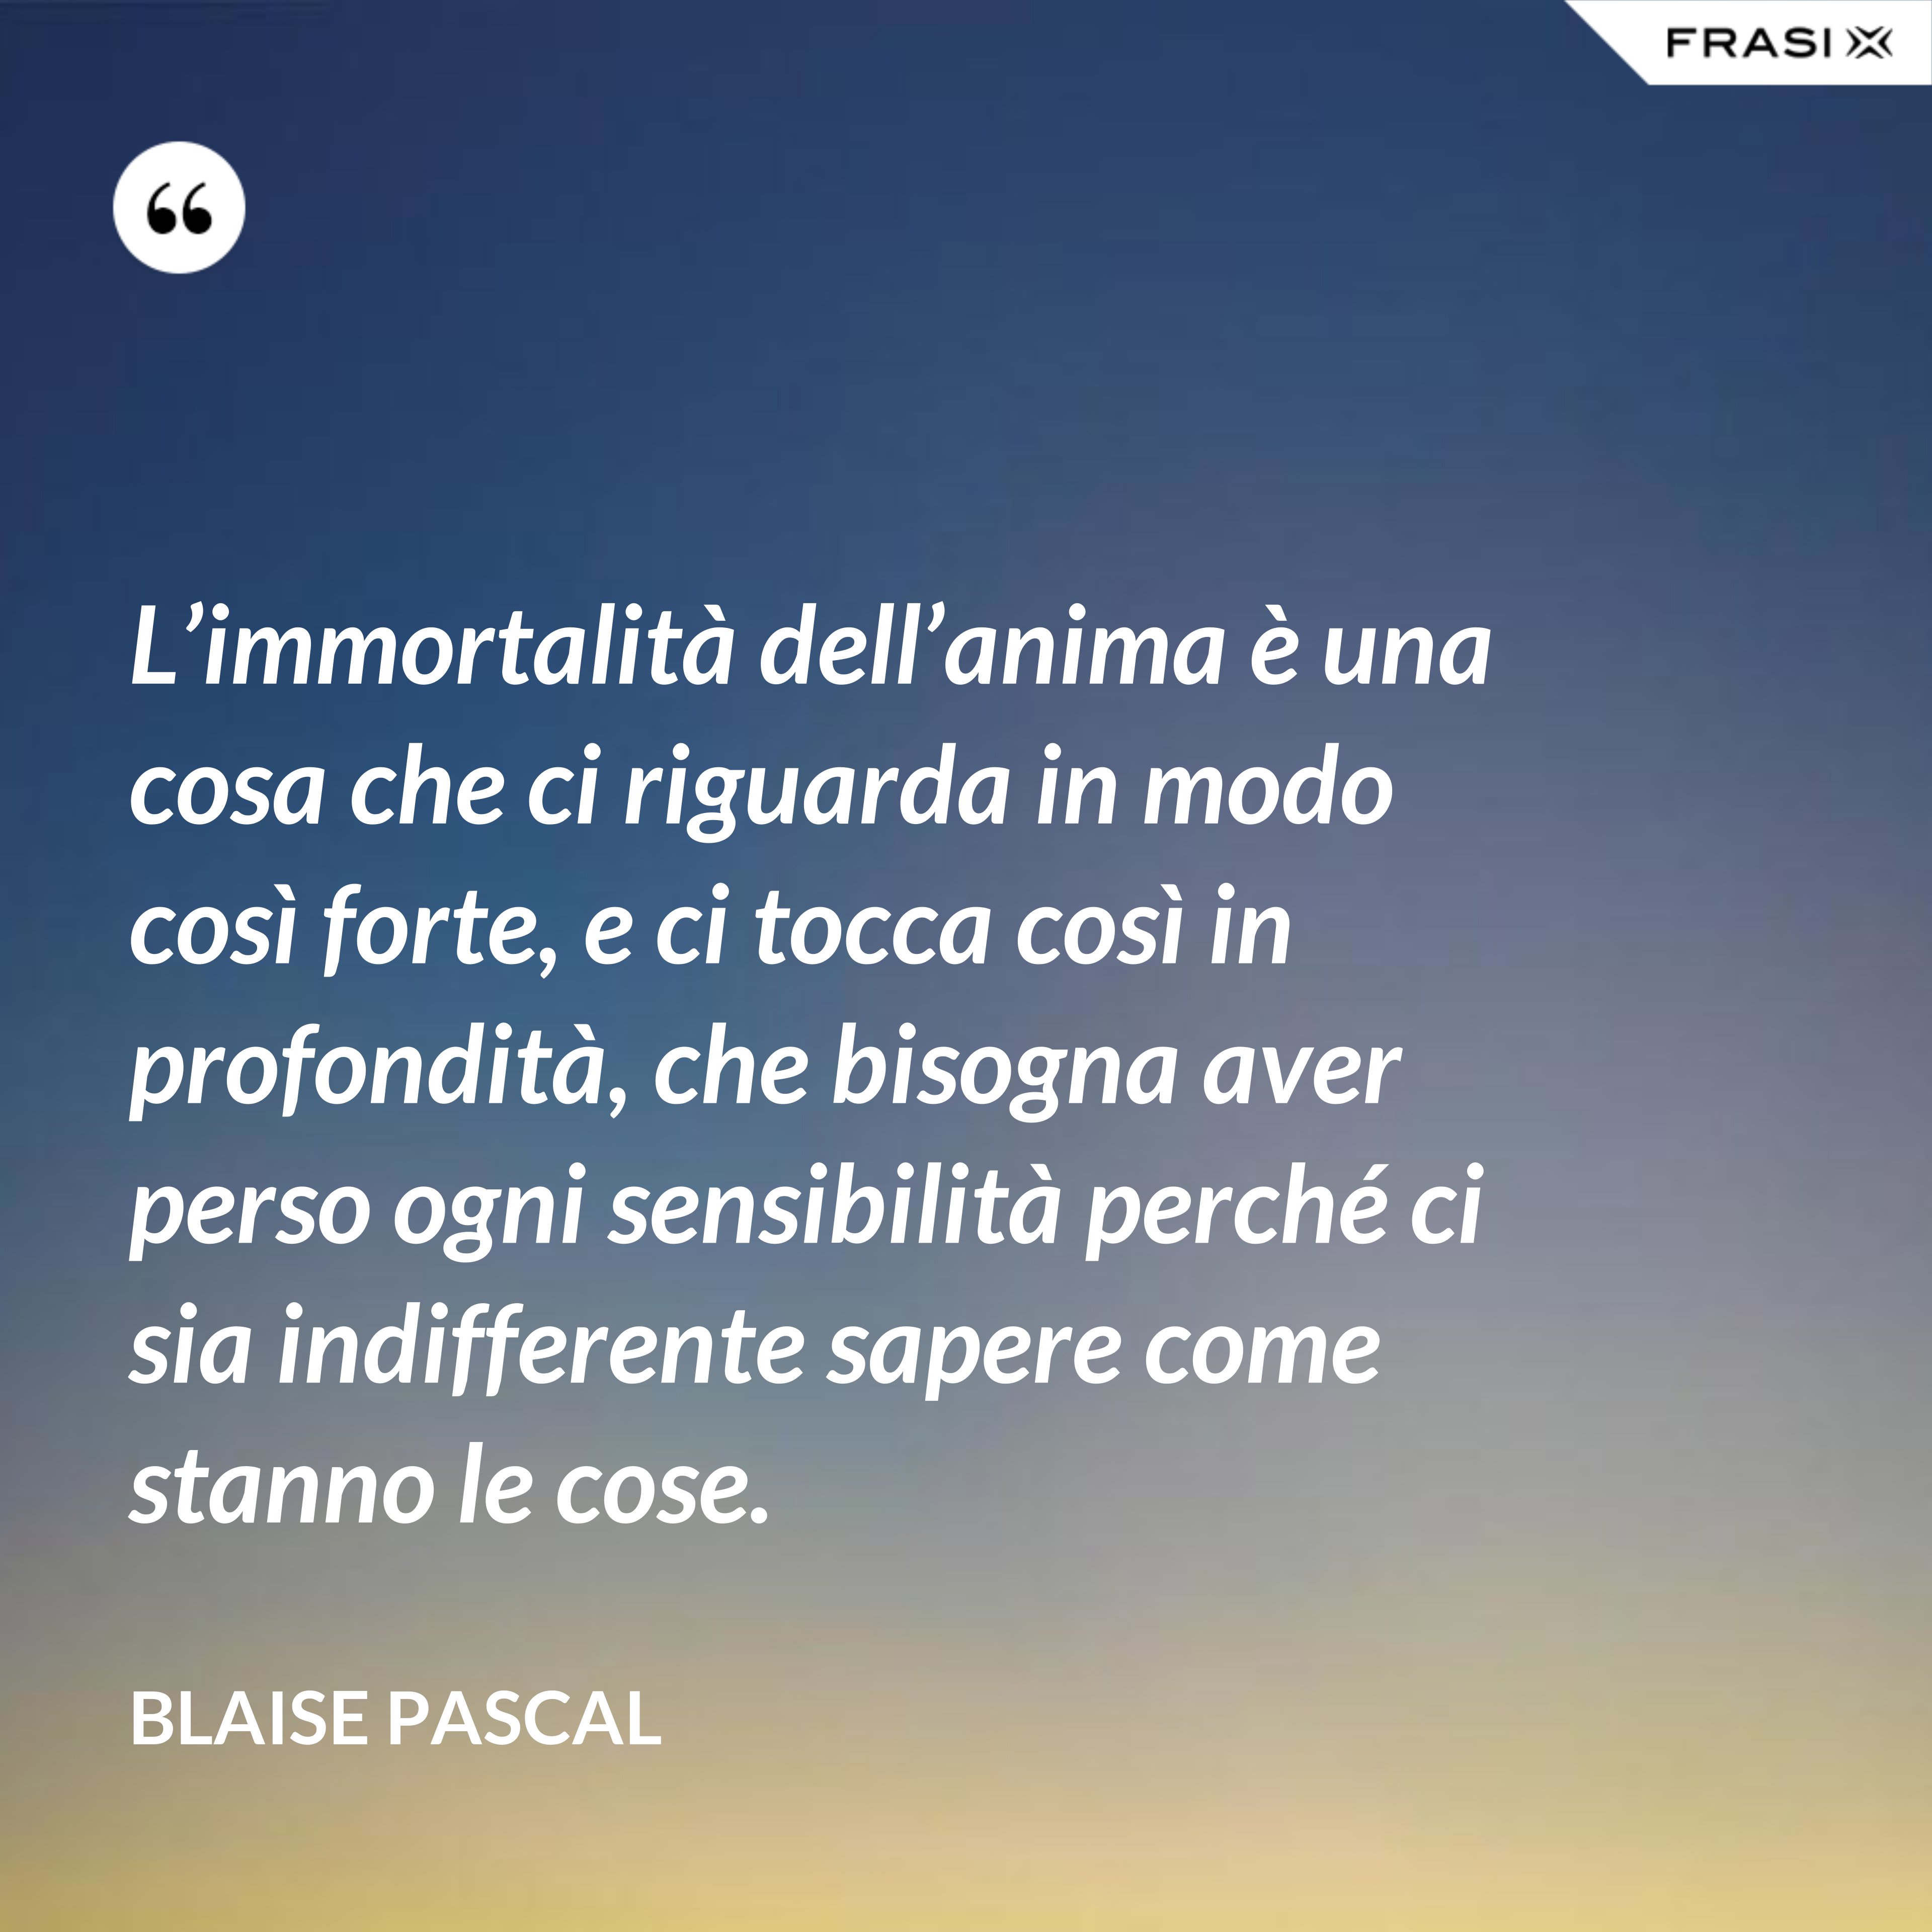 L’immortalità dell’anima è una cosa che ci riguarda in modo così forte, e ci tocca così in profondità, che bisogna aver perso ogni sensibilità perché ci sia indifferente sapere come stanno le cose. - Blaise Pascal